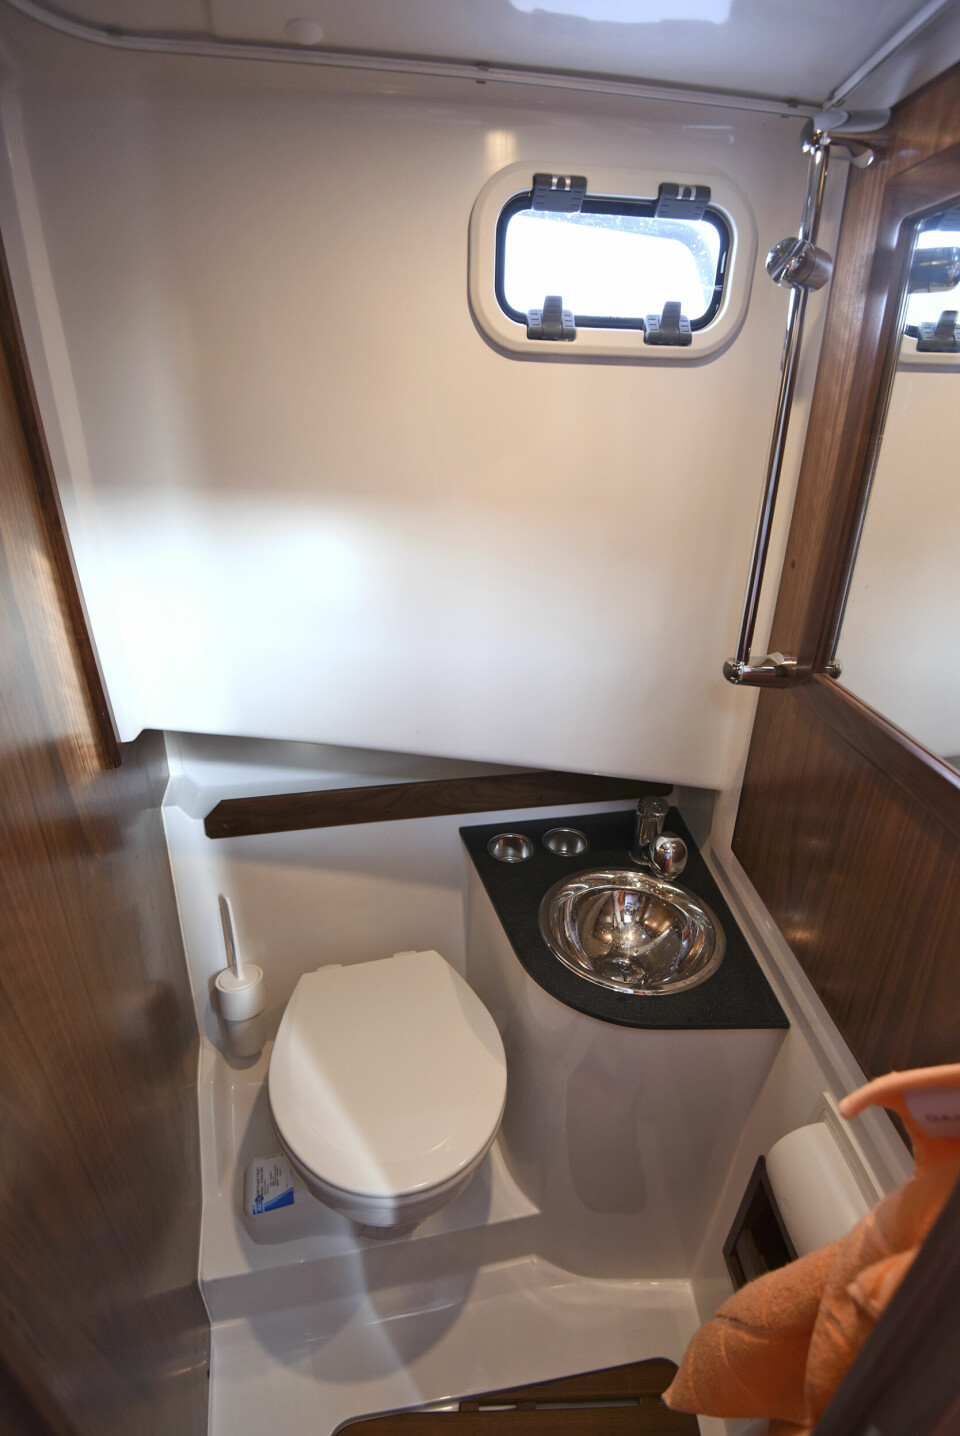 KOMPLETT: Toalettrommet har alle fasiliteter, inkludert god dusjmulighet og bra ståhøyde